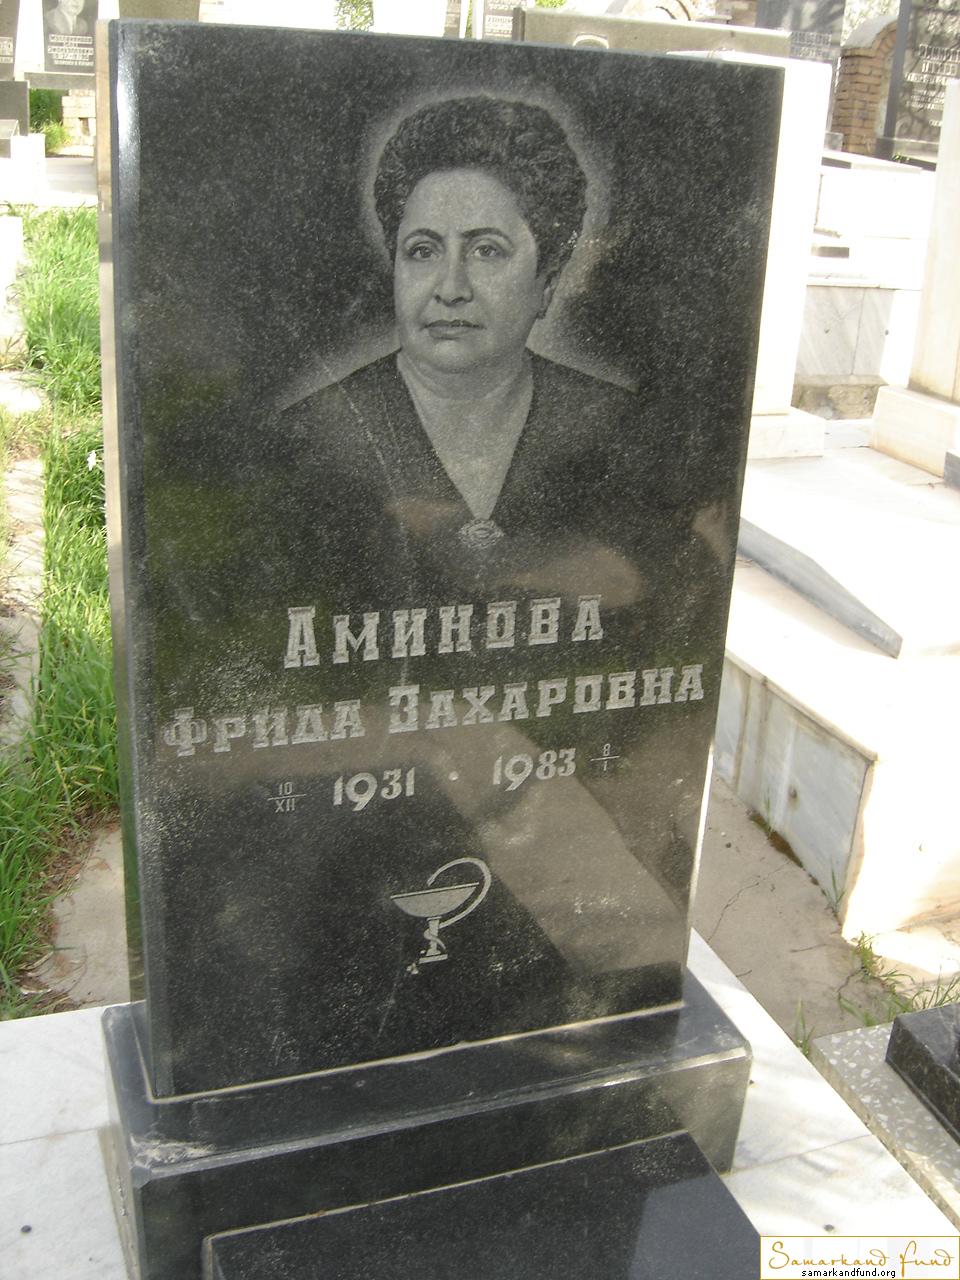 Аминова Фрида Захаровна 1931 - 1983 зах.134а - 507  № 11.JPG